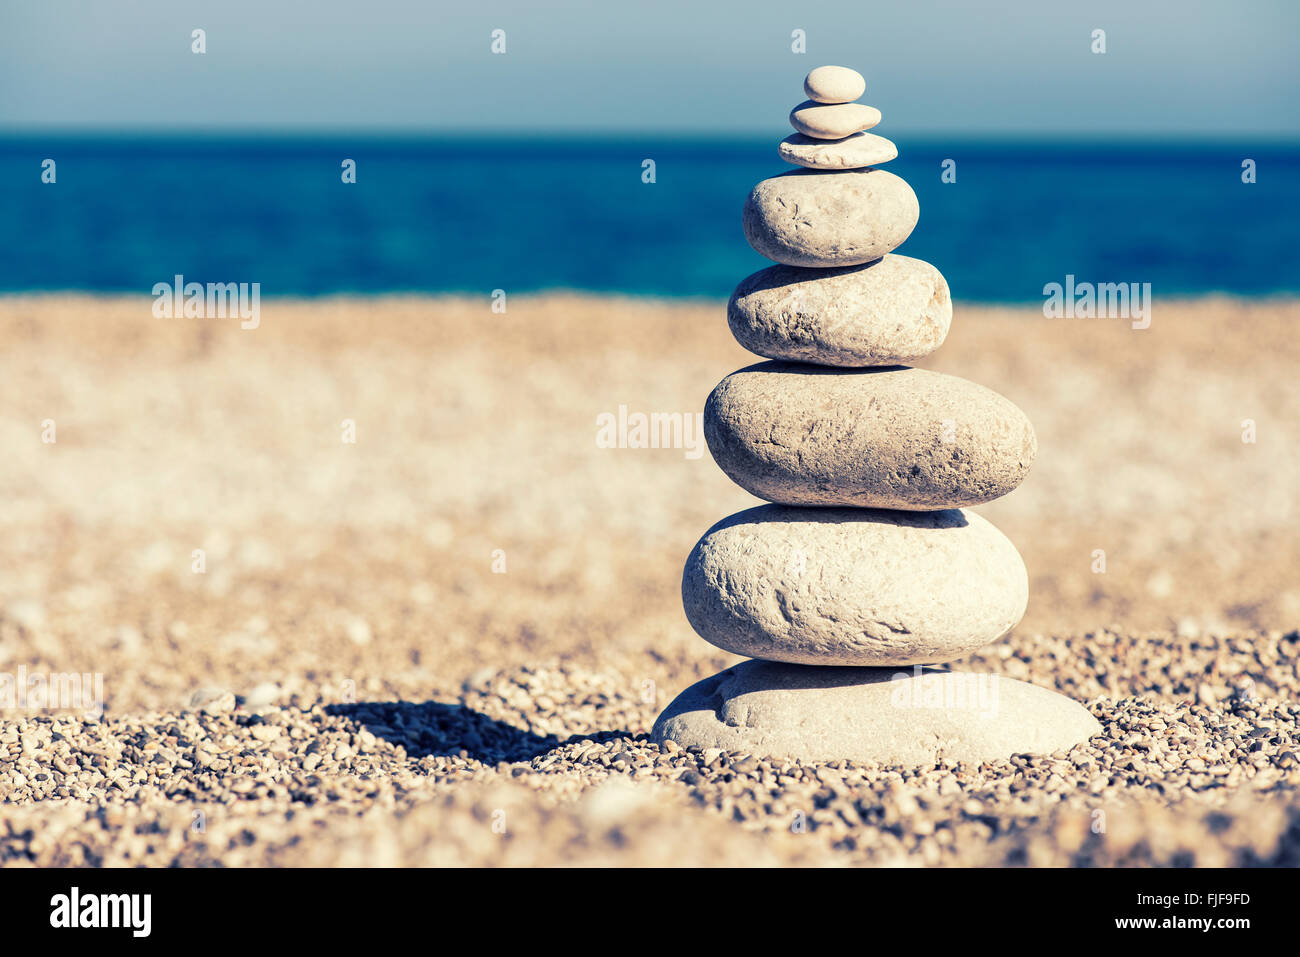 L'équilibre des pierres, vintage retro hiérarchie comme instagram pile dans la mer bleu fond. Spa ou bien-être, la liberté et la stabilité Banque D'Images